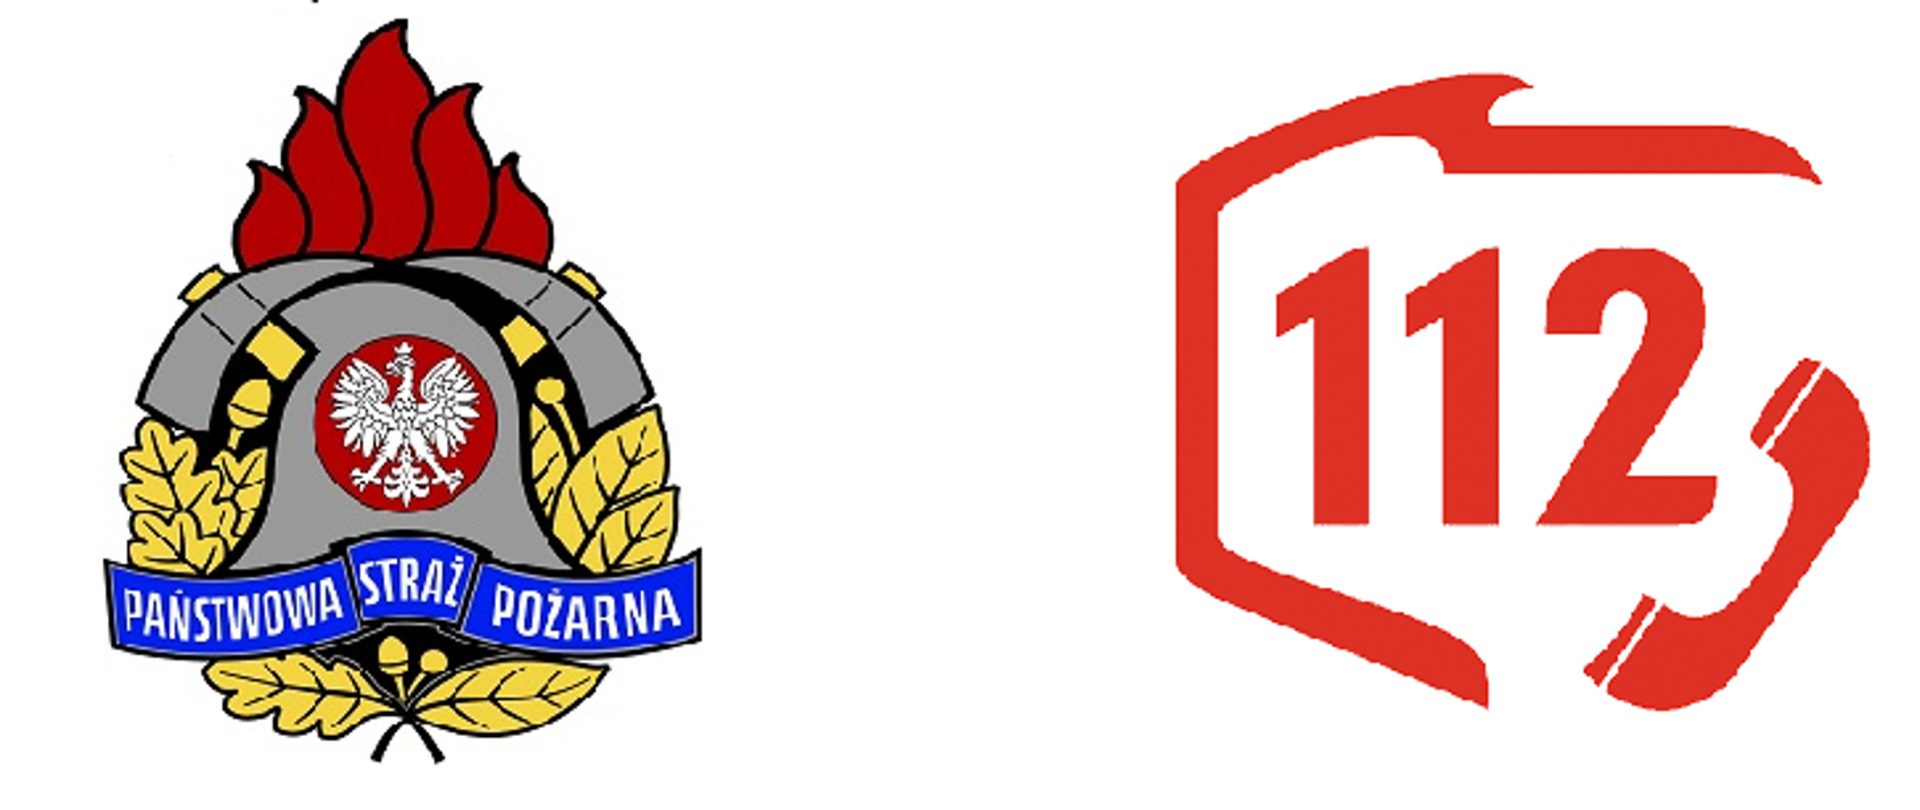 Grafika przedstawia po lewej logo Państwowej Straży Pożarnej, a po prawej logo numeru alarmowego 112, którego składa się z konturu przedstawiającego mapę Polski, słuchawki telefonu, a także numeru 112 na jego środku.